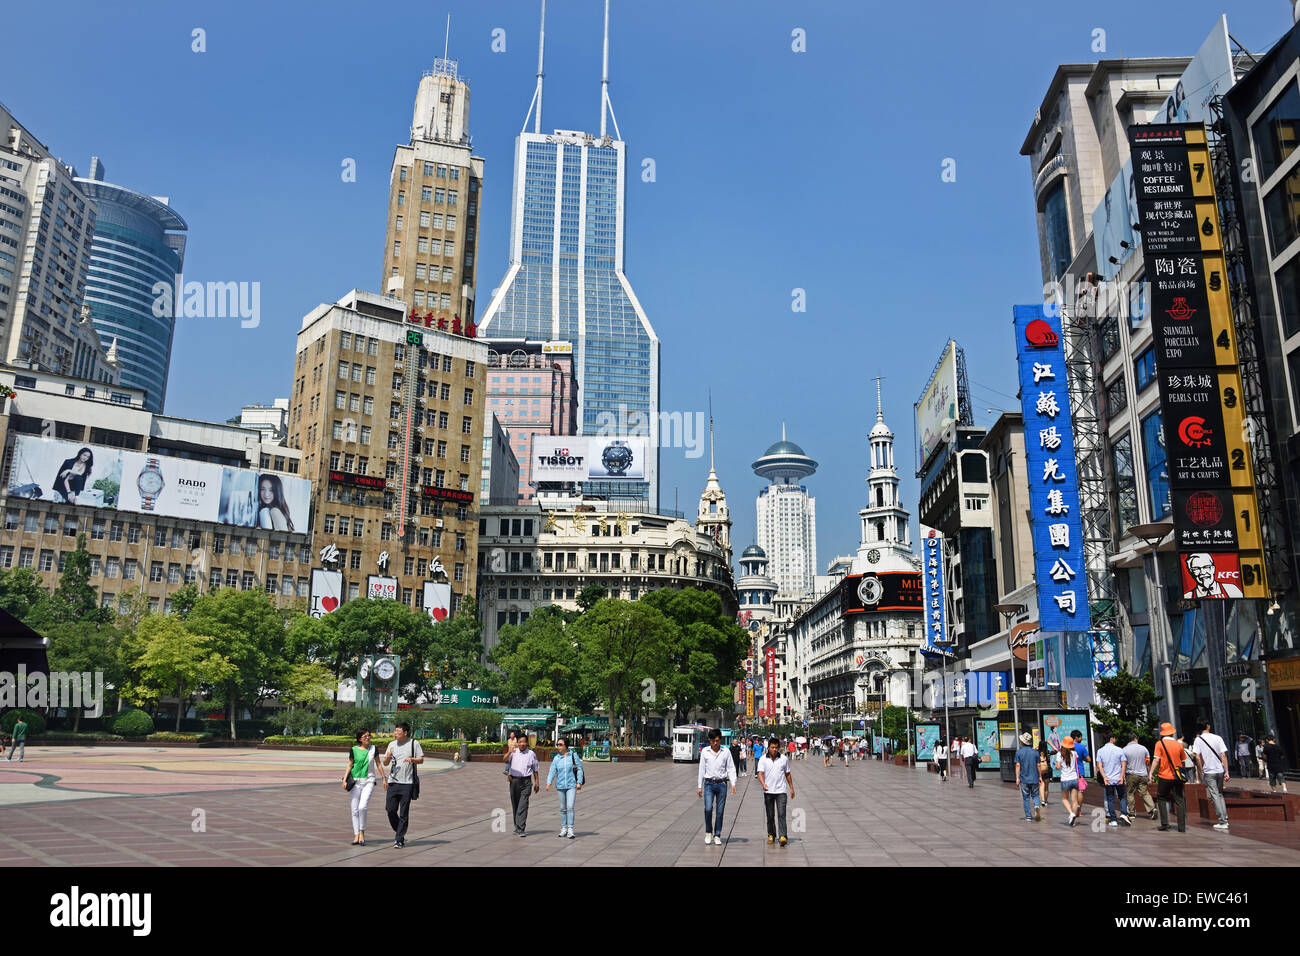 Besucher an der Nanjing Road. Die Haupteinkaufsstraße von Shanghai. Einer der belebtesten Einkaufsstraßen der Welt. East Nanjing Road Stockfoto